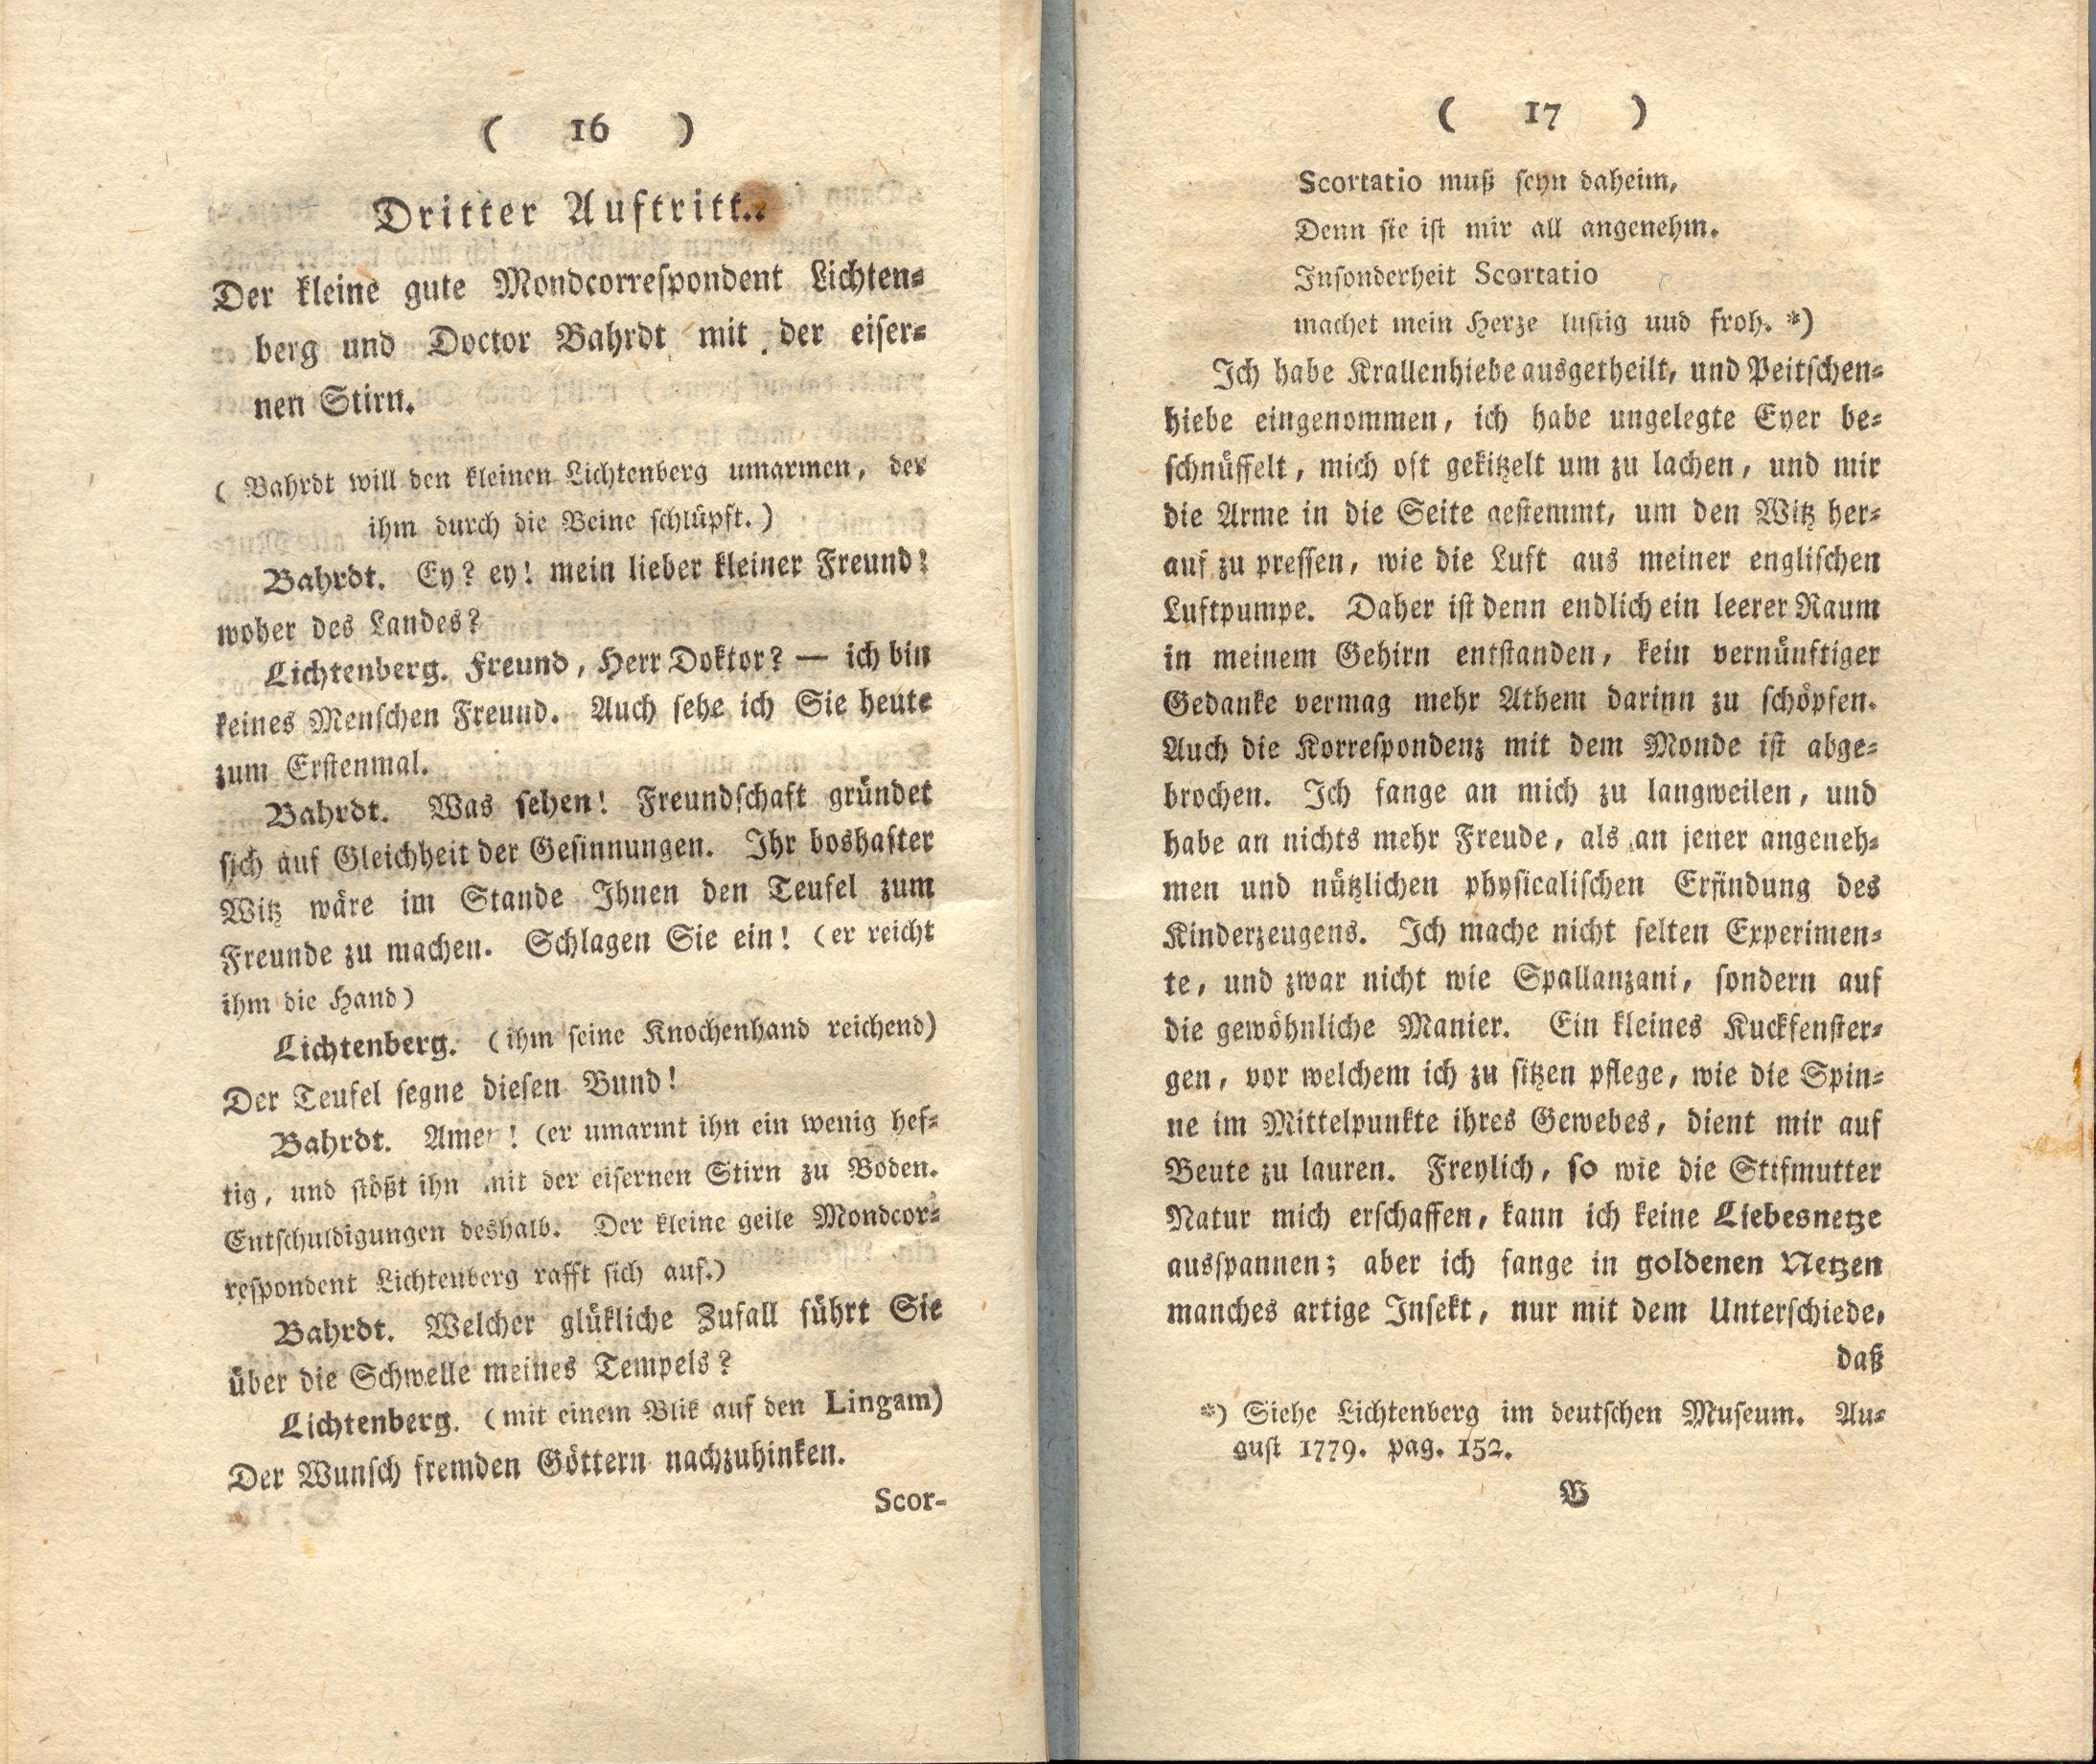 Doctor Bahrdt mit der eisernen Stirn (1790) | 10. (16-17) Haupttext